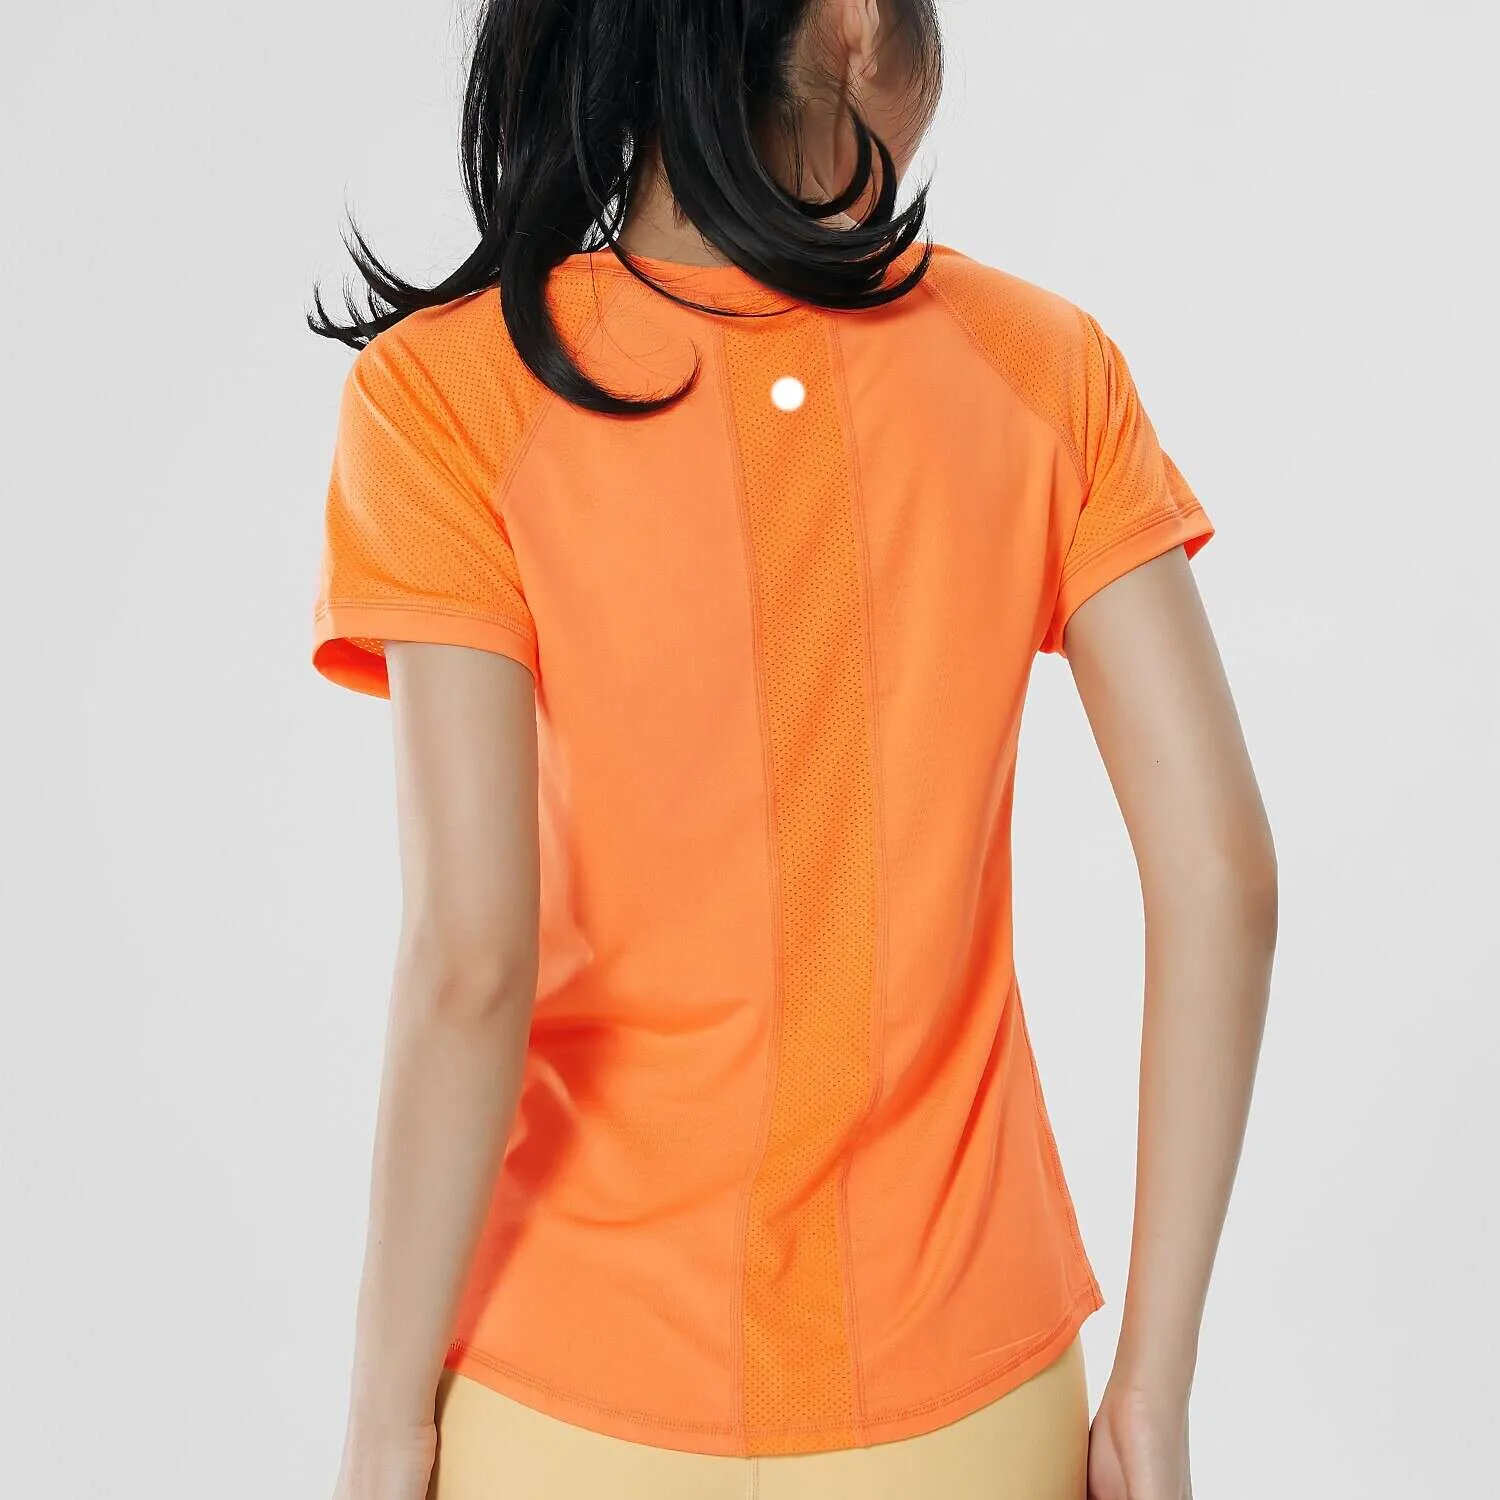 LLデザイナークルーネックスポーツメッシュクイック乾燥Tシャツ女性用夏半袖薄ヨガスーツ通気性スリムフィットプロフェッショナルランニングフィットネストップ